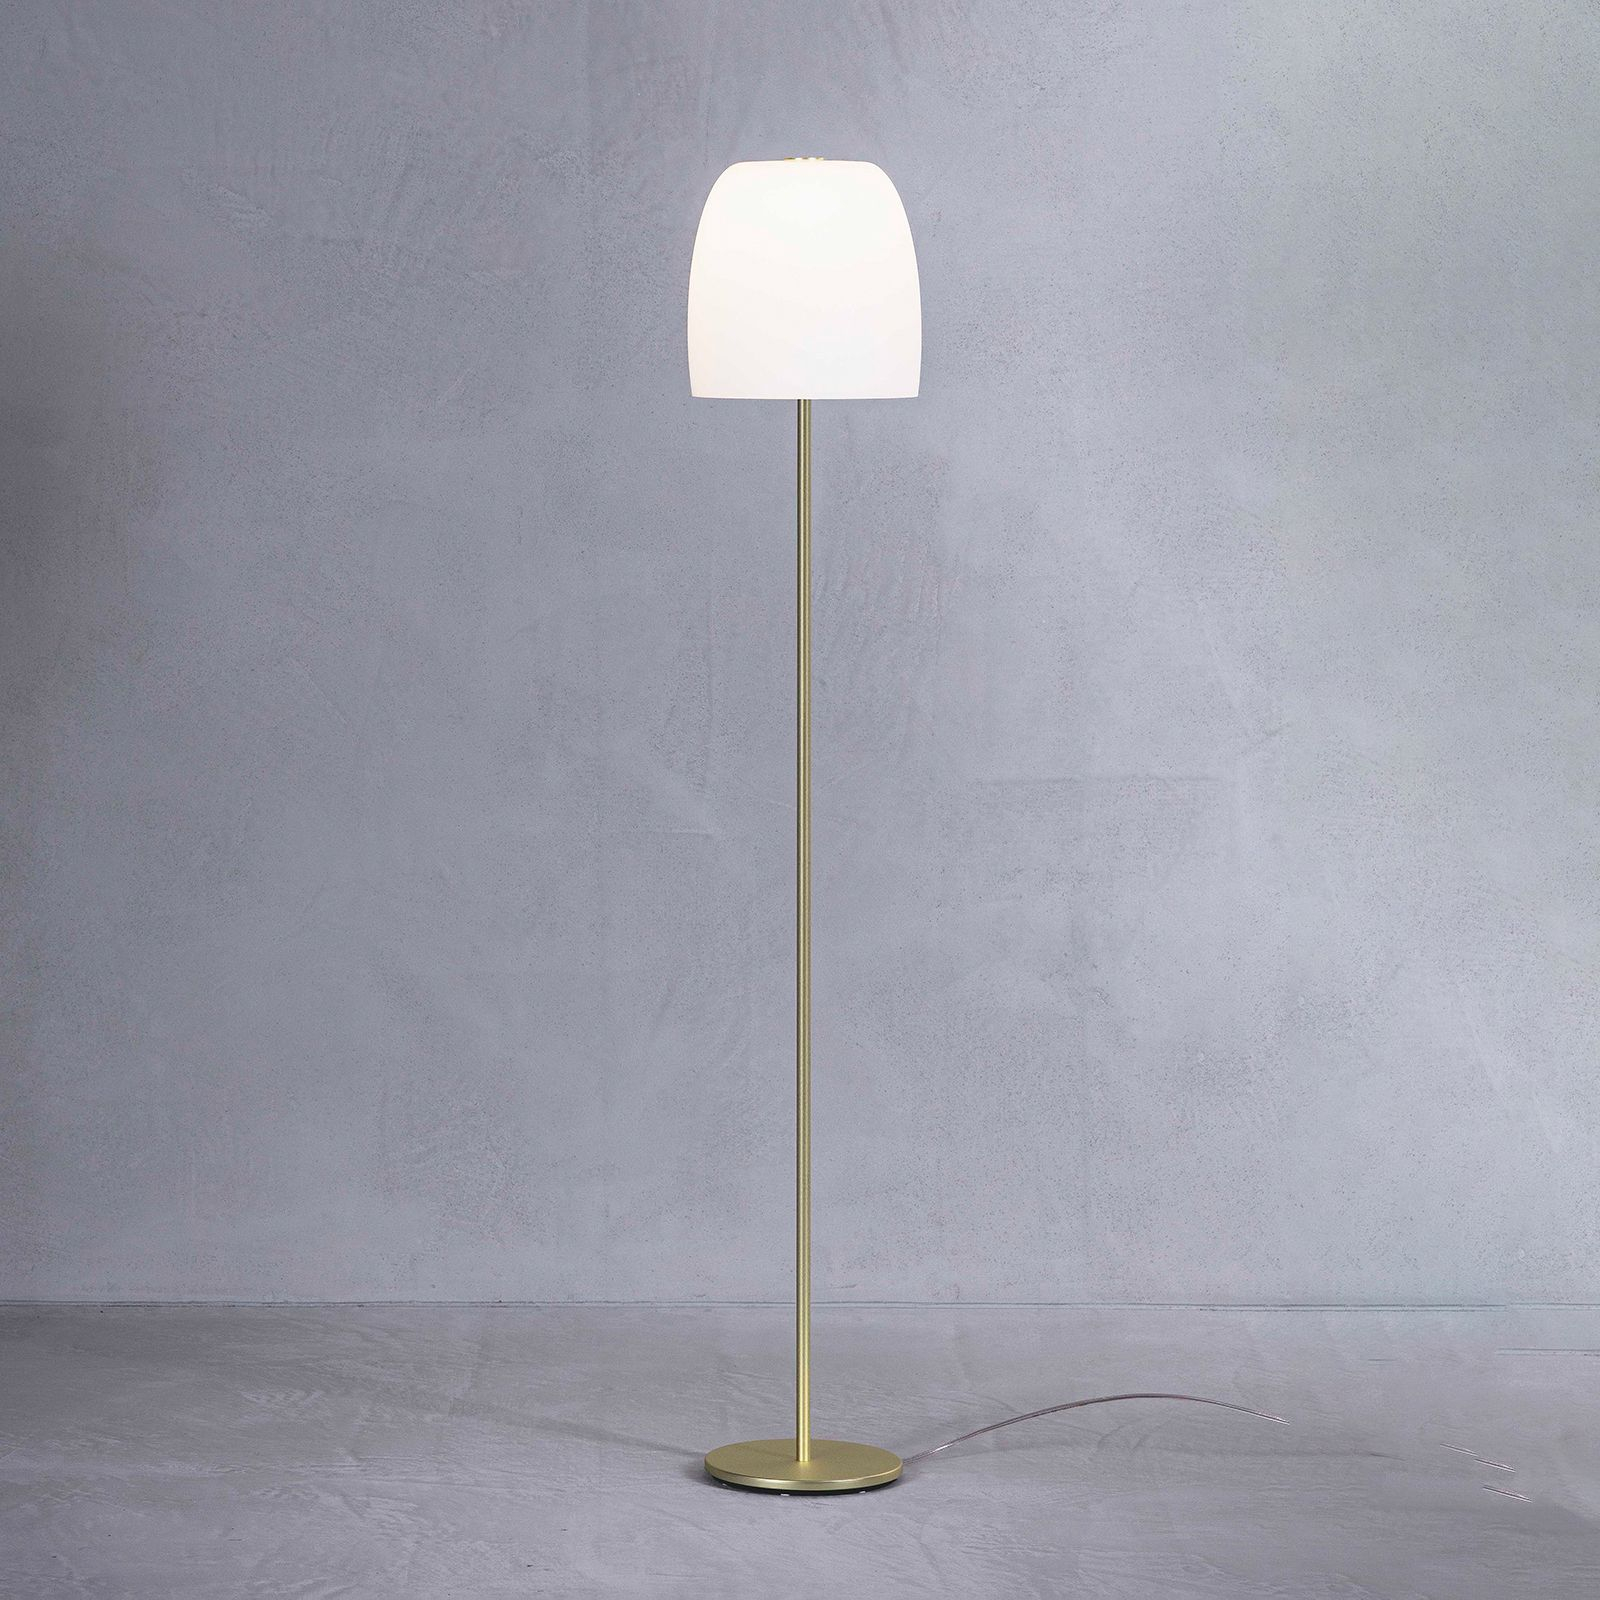 Prandina Notte F1 floor lamp, brass/white